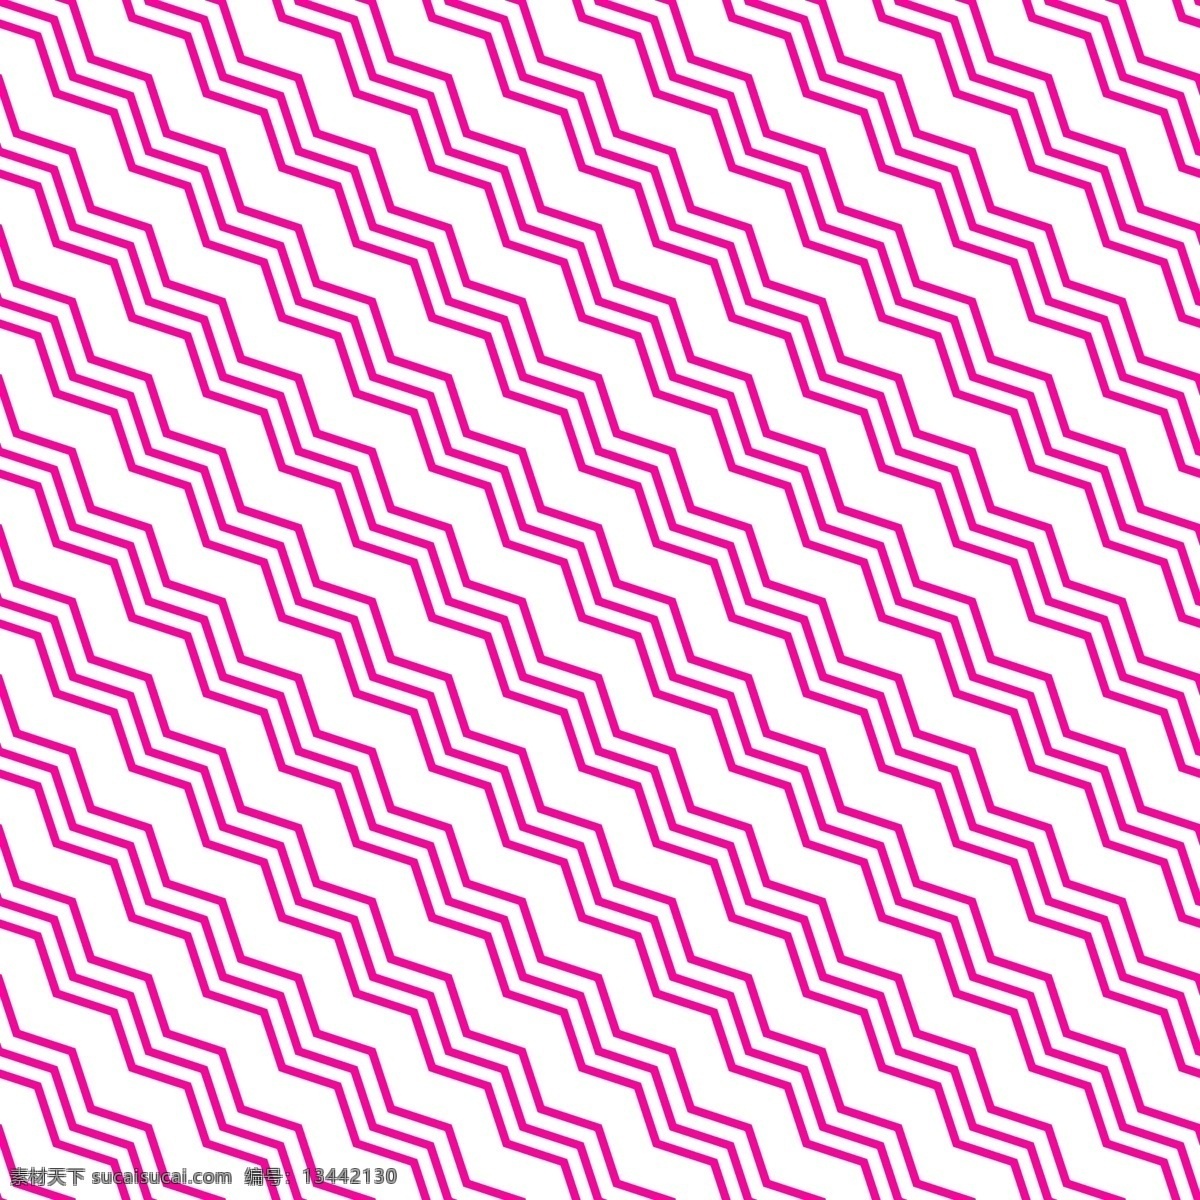 粉色 三 折线 图案 矢量 背景 紫色 规律 无缝 四方 连续 平铺 几何线条